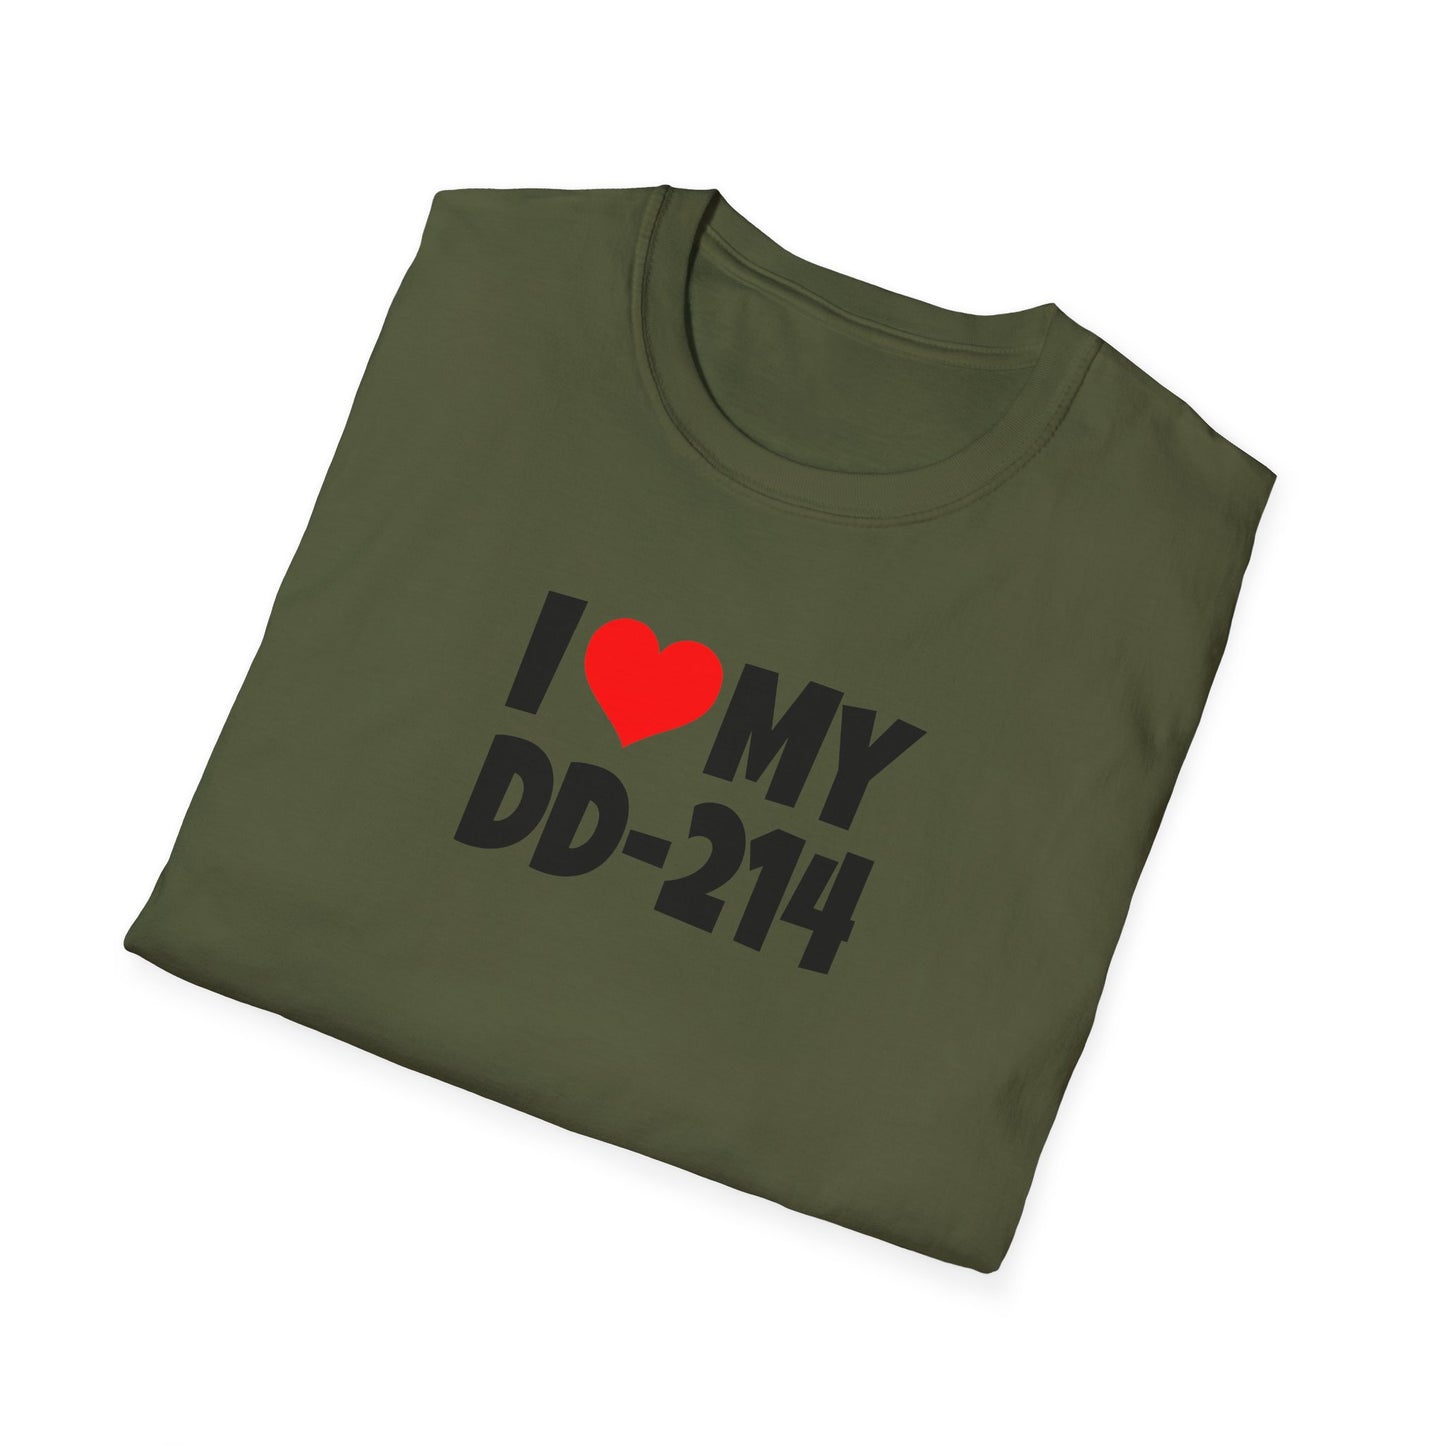 I Love my DD-214 - T-Shirt